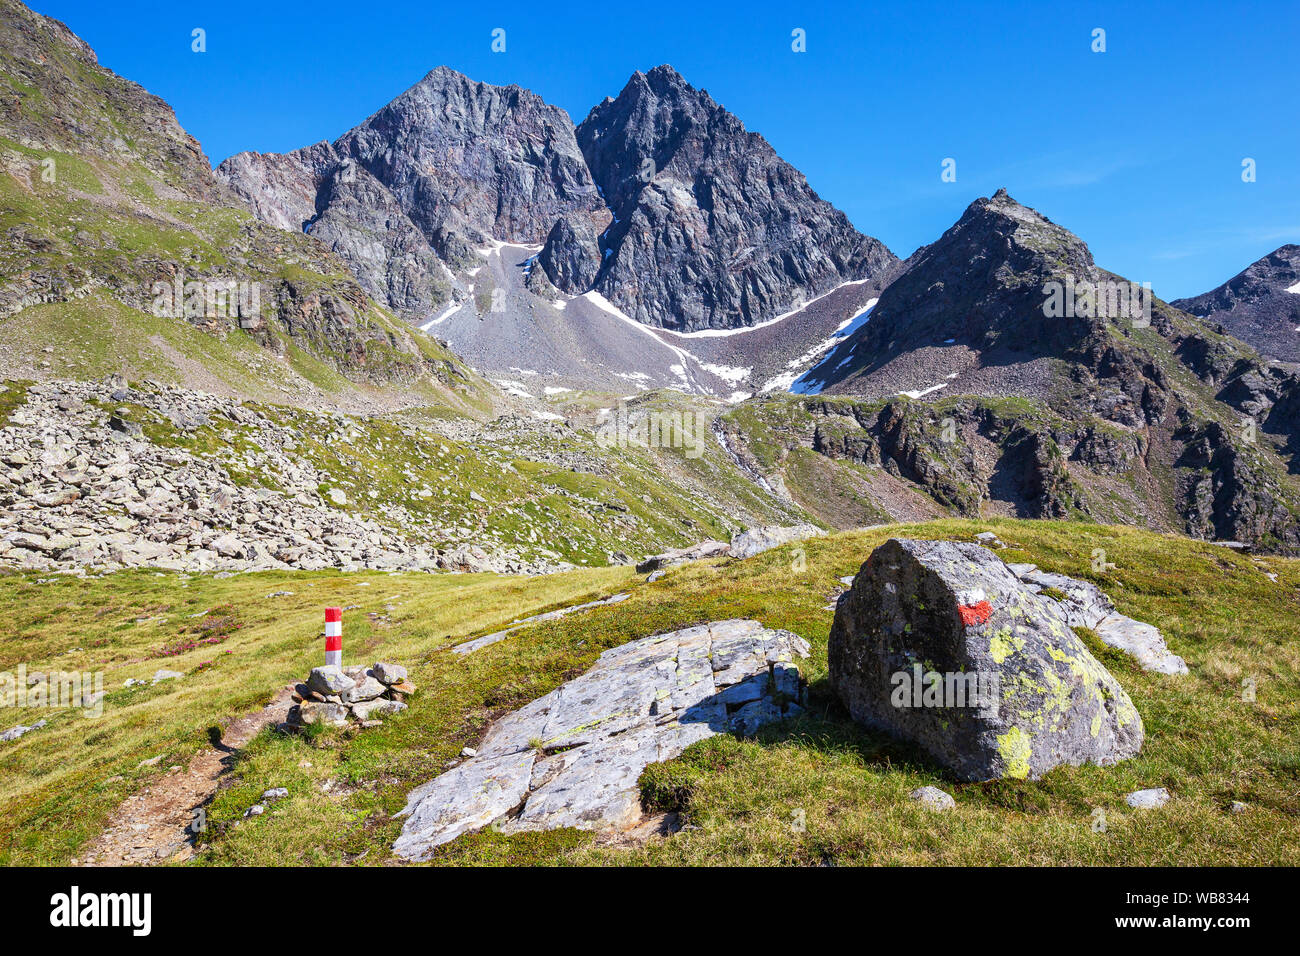 L'Hoher Prijakt (alta Prijakt) e Prijakt Niederer (Bassa Prijakt). Sentiero escursionistico. Schober le montagne del gruppo. Alpi austriache. Nationalpark Hohe Tauern. Foto Stock